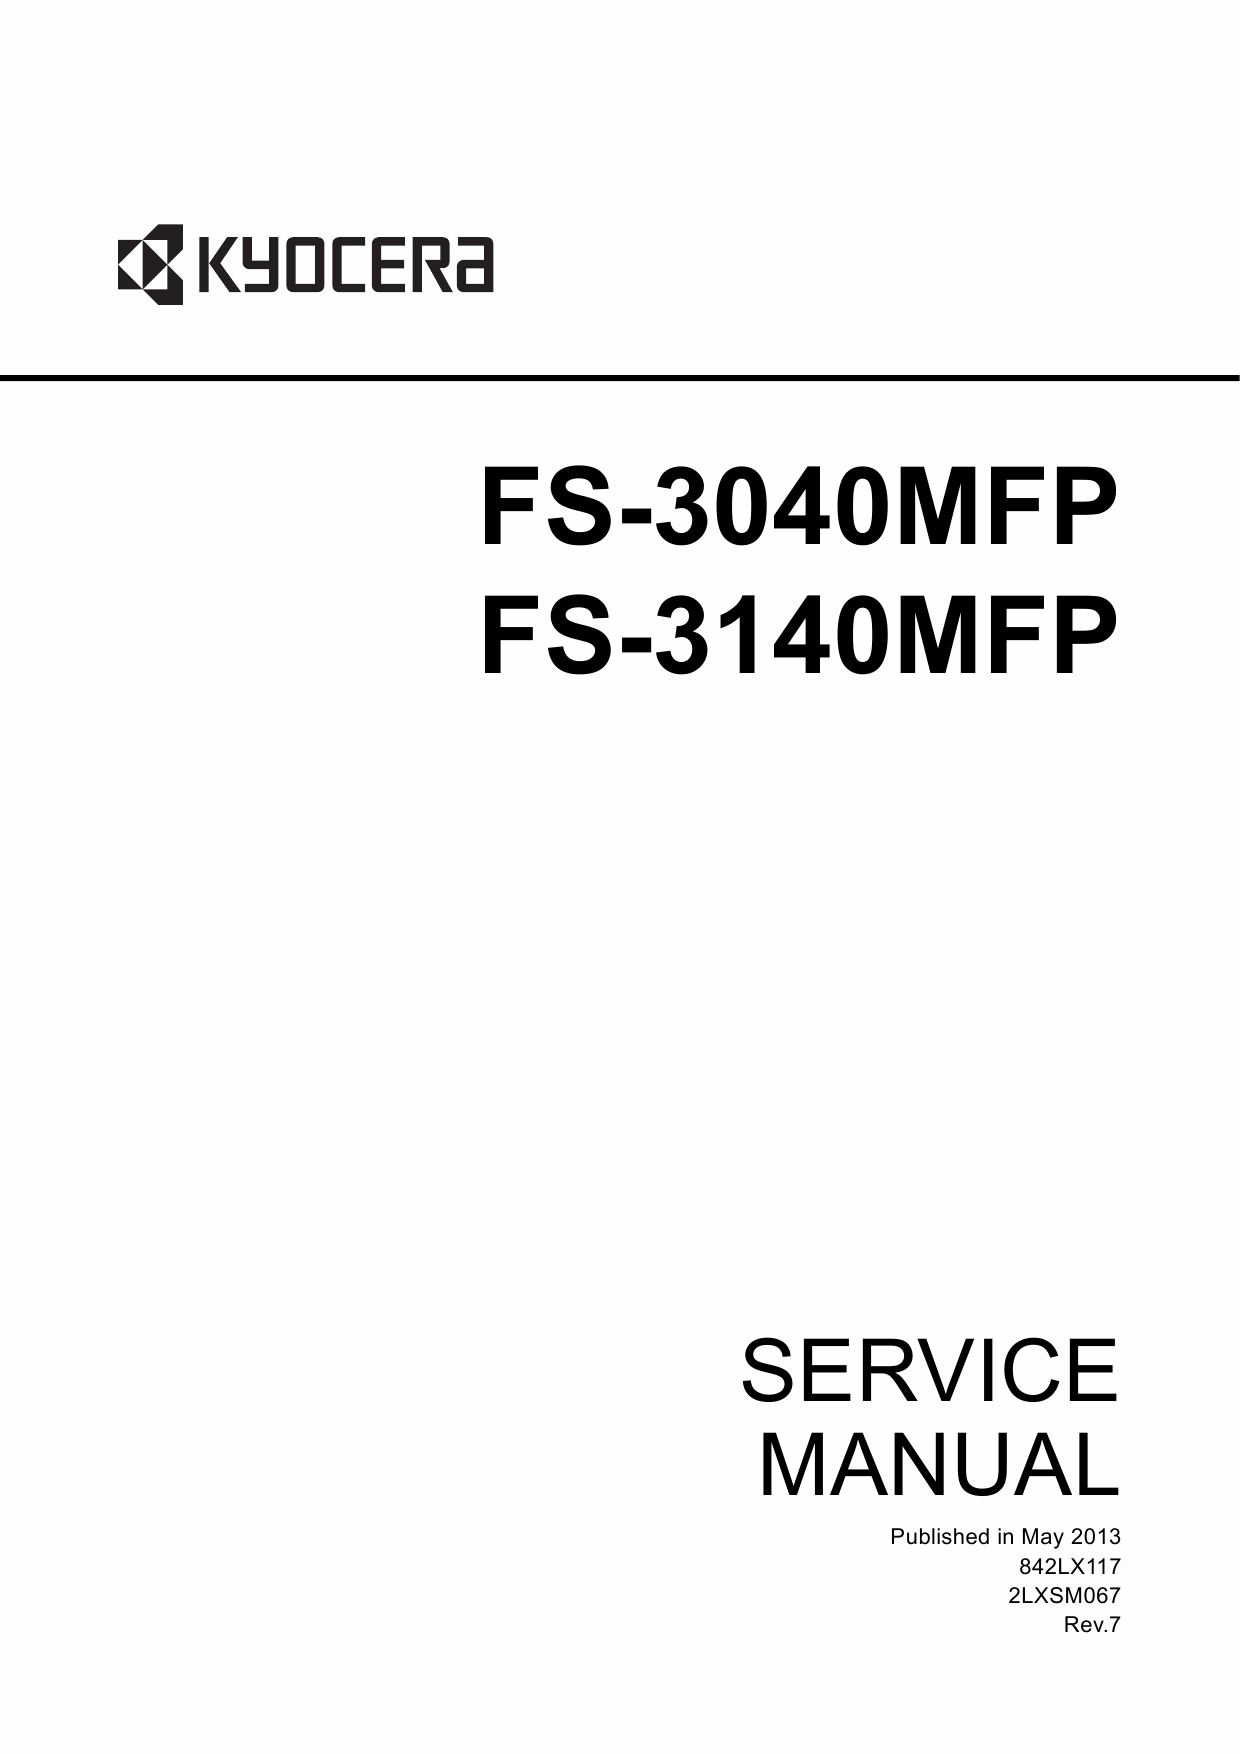 KYOCERA MFP FS-3040MFP 3140MFP Service Manual-1